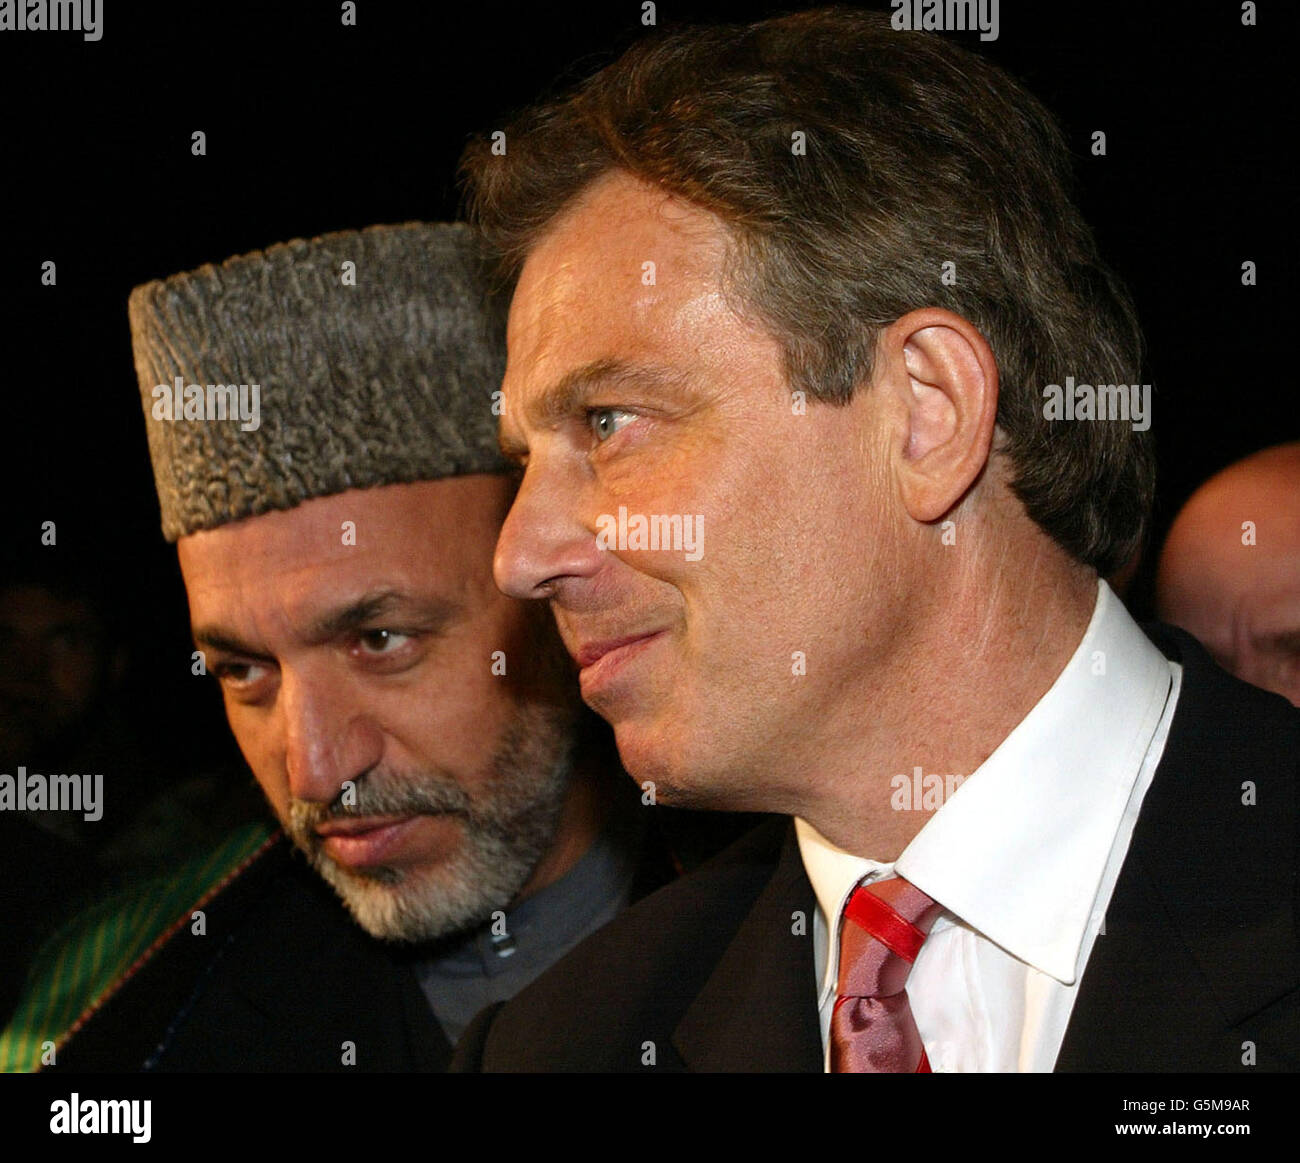 Der britische Premierminister Tony Blair (R) tritt bei seiner Ankunft auf dem Luftstützpunkt Bagram mit dem afghanischen Interimsführer Hamid Karzai zusammen. Blair flog am Montag nach Afghanistan und wurde damit der erste westliche Regierungschef, der das Land seit dem Sturz des Taliban-Regimes besuchte. Stockfoto